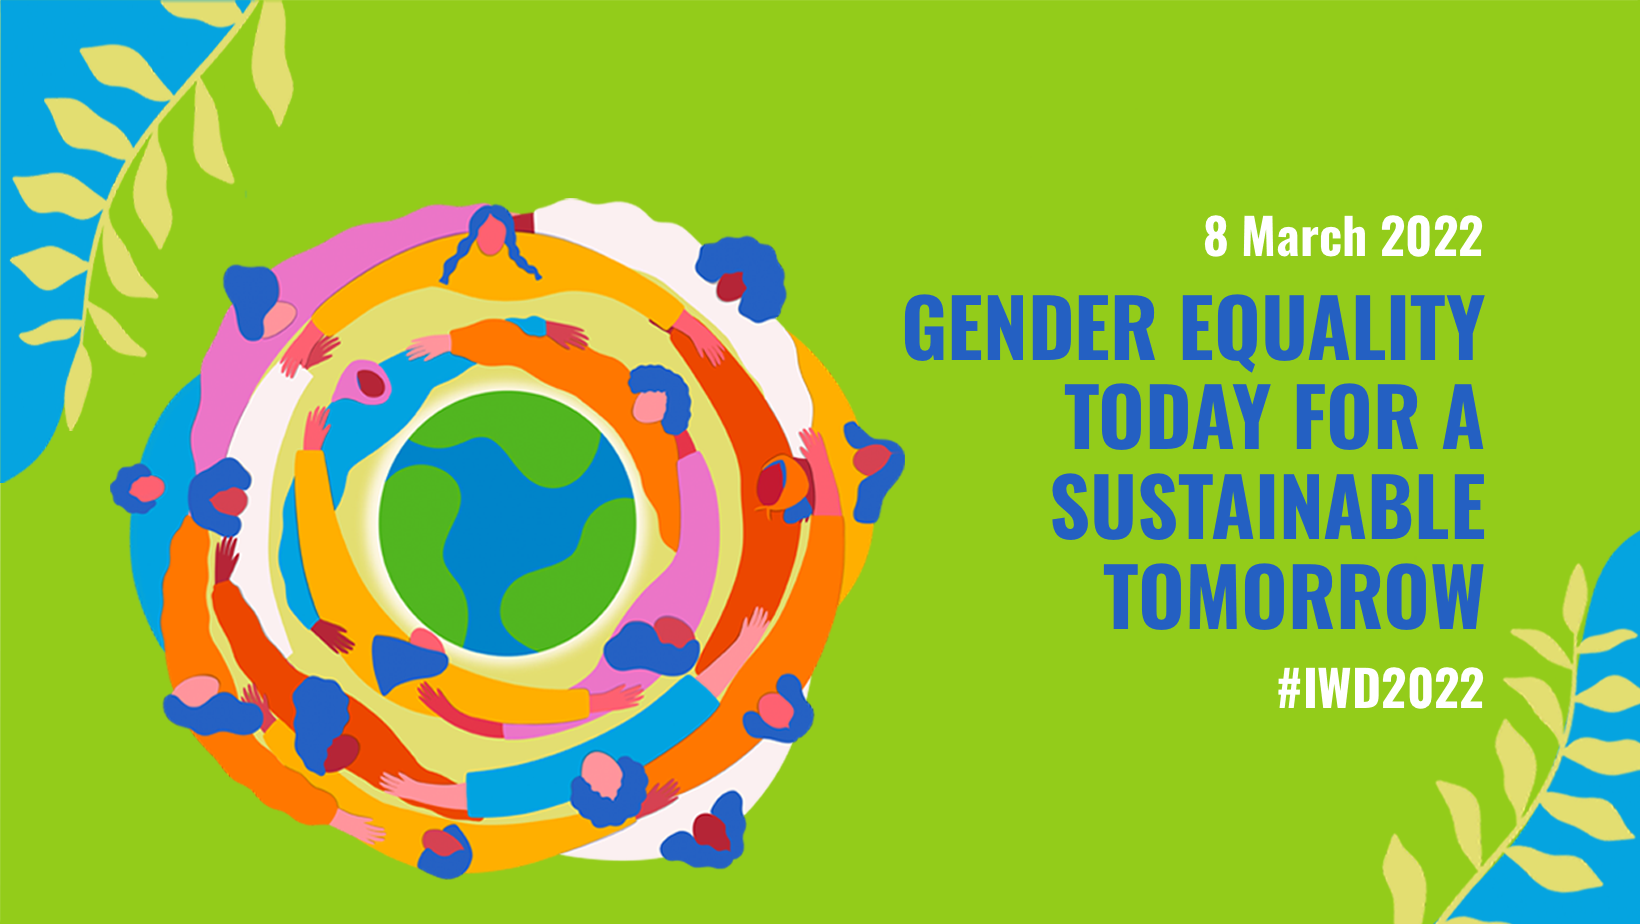 Poster delle Nazioni Unite di colore verde con un'immagine di donne abbracciate che formano un circolo. Sulla destra si trova la scritta "Gender equality today for a sustainable tomorrow"